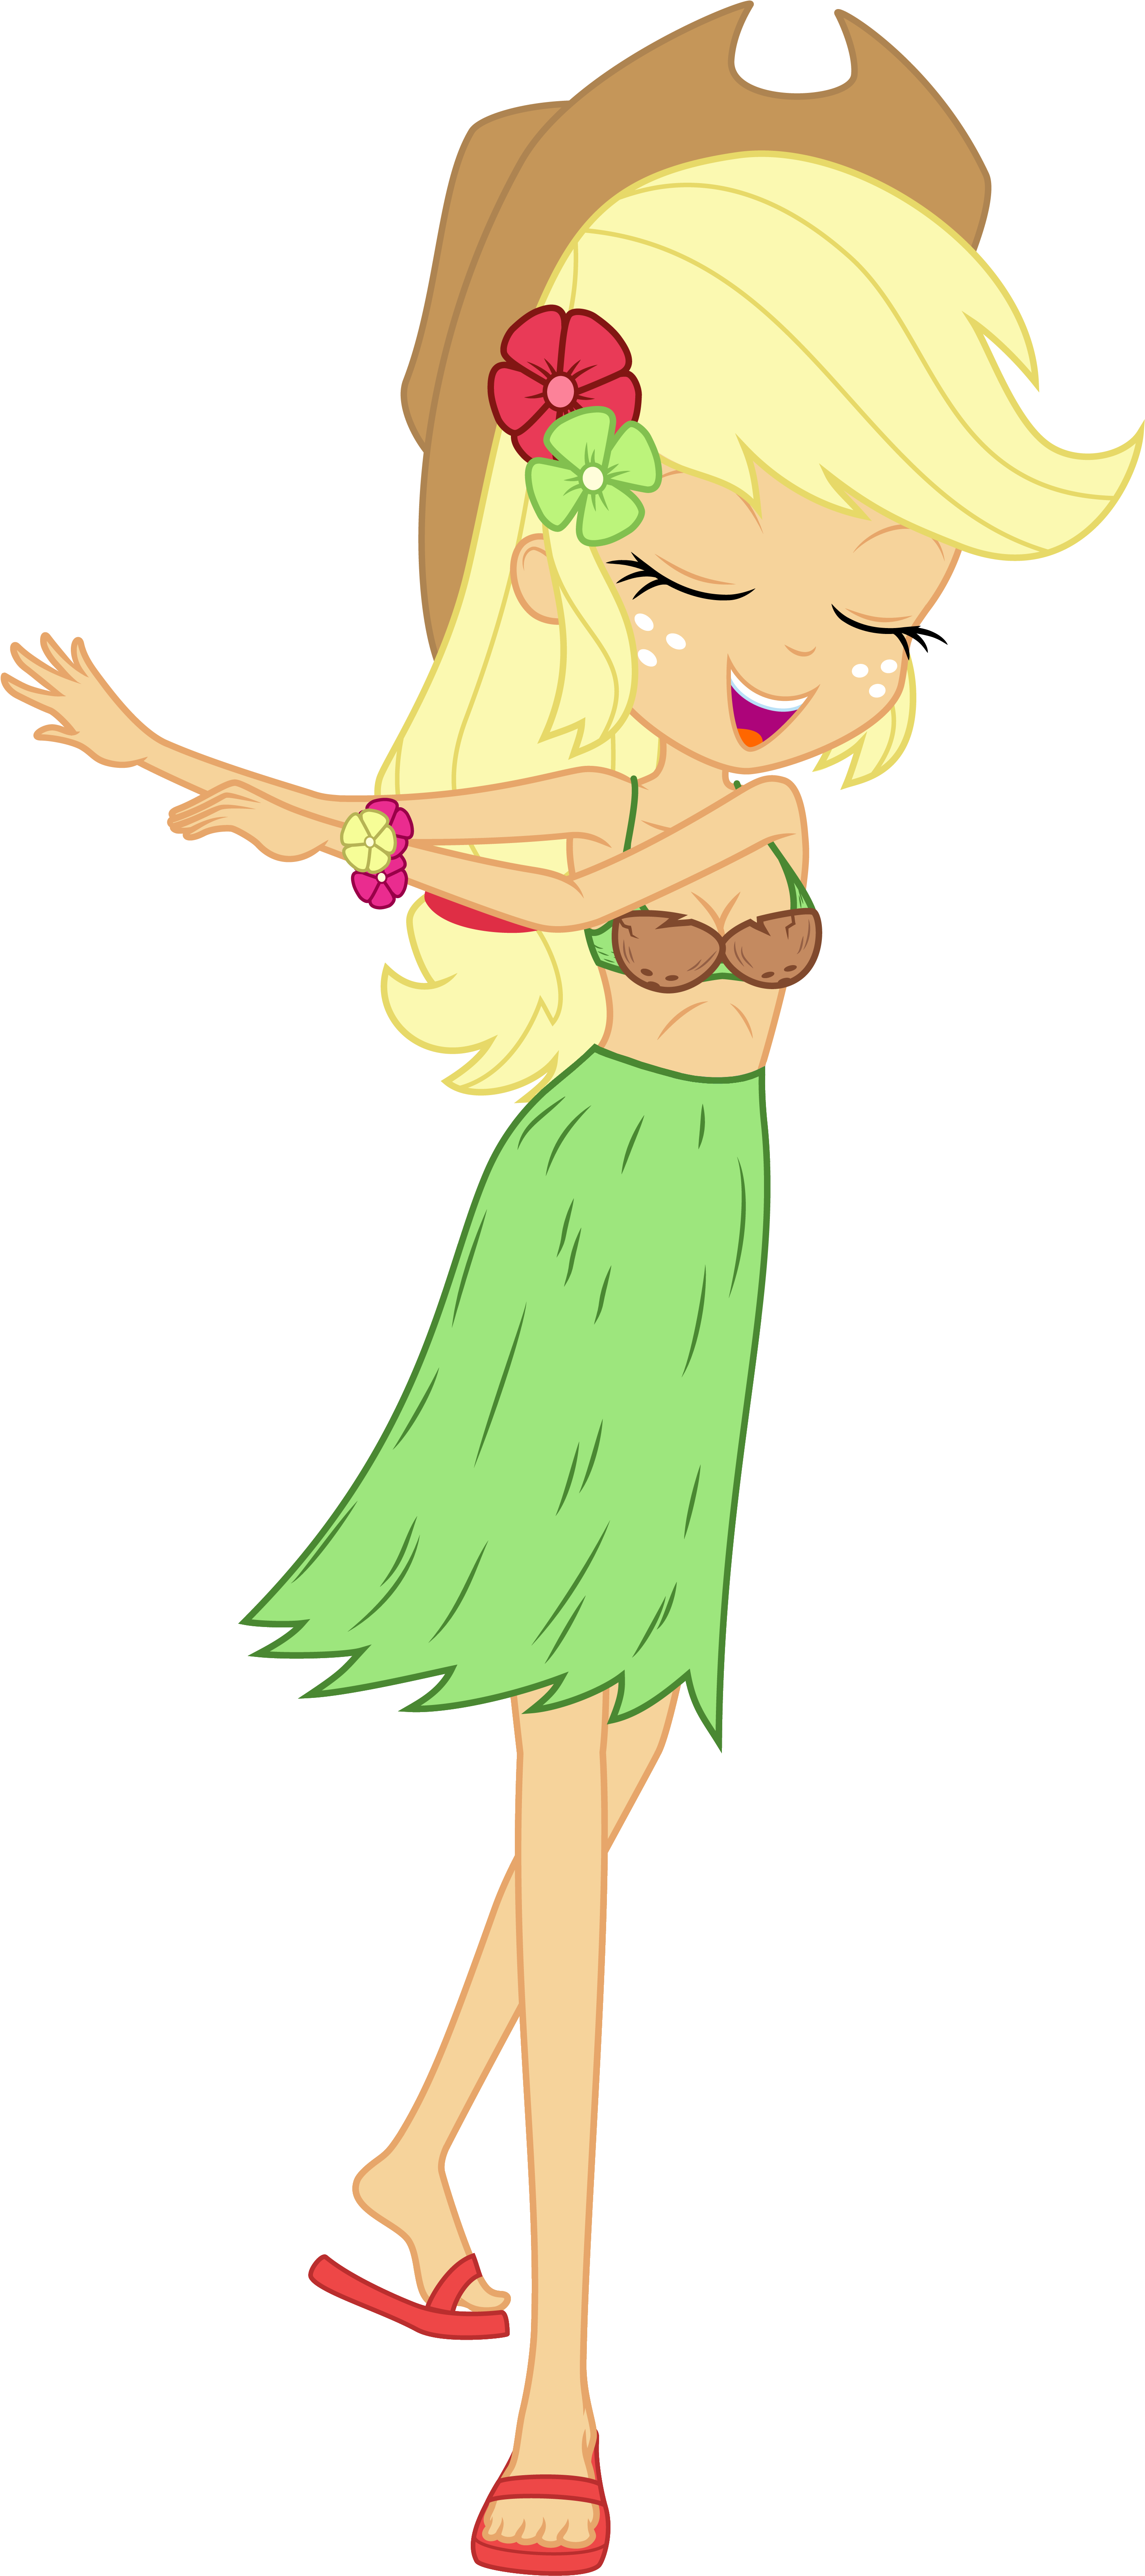 Animated Hula Girl Dancing